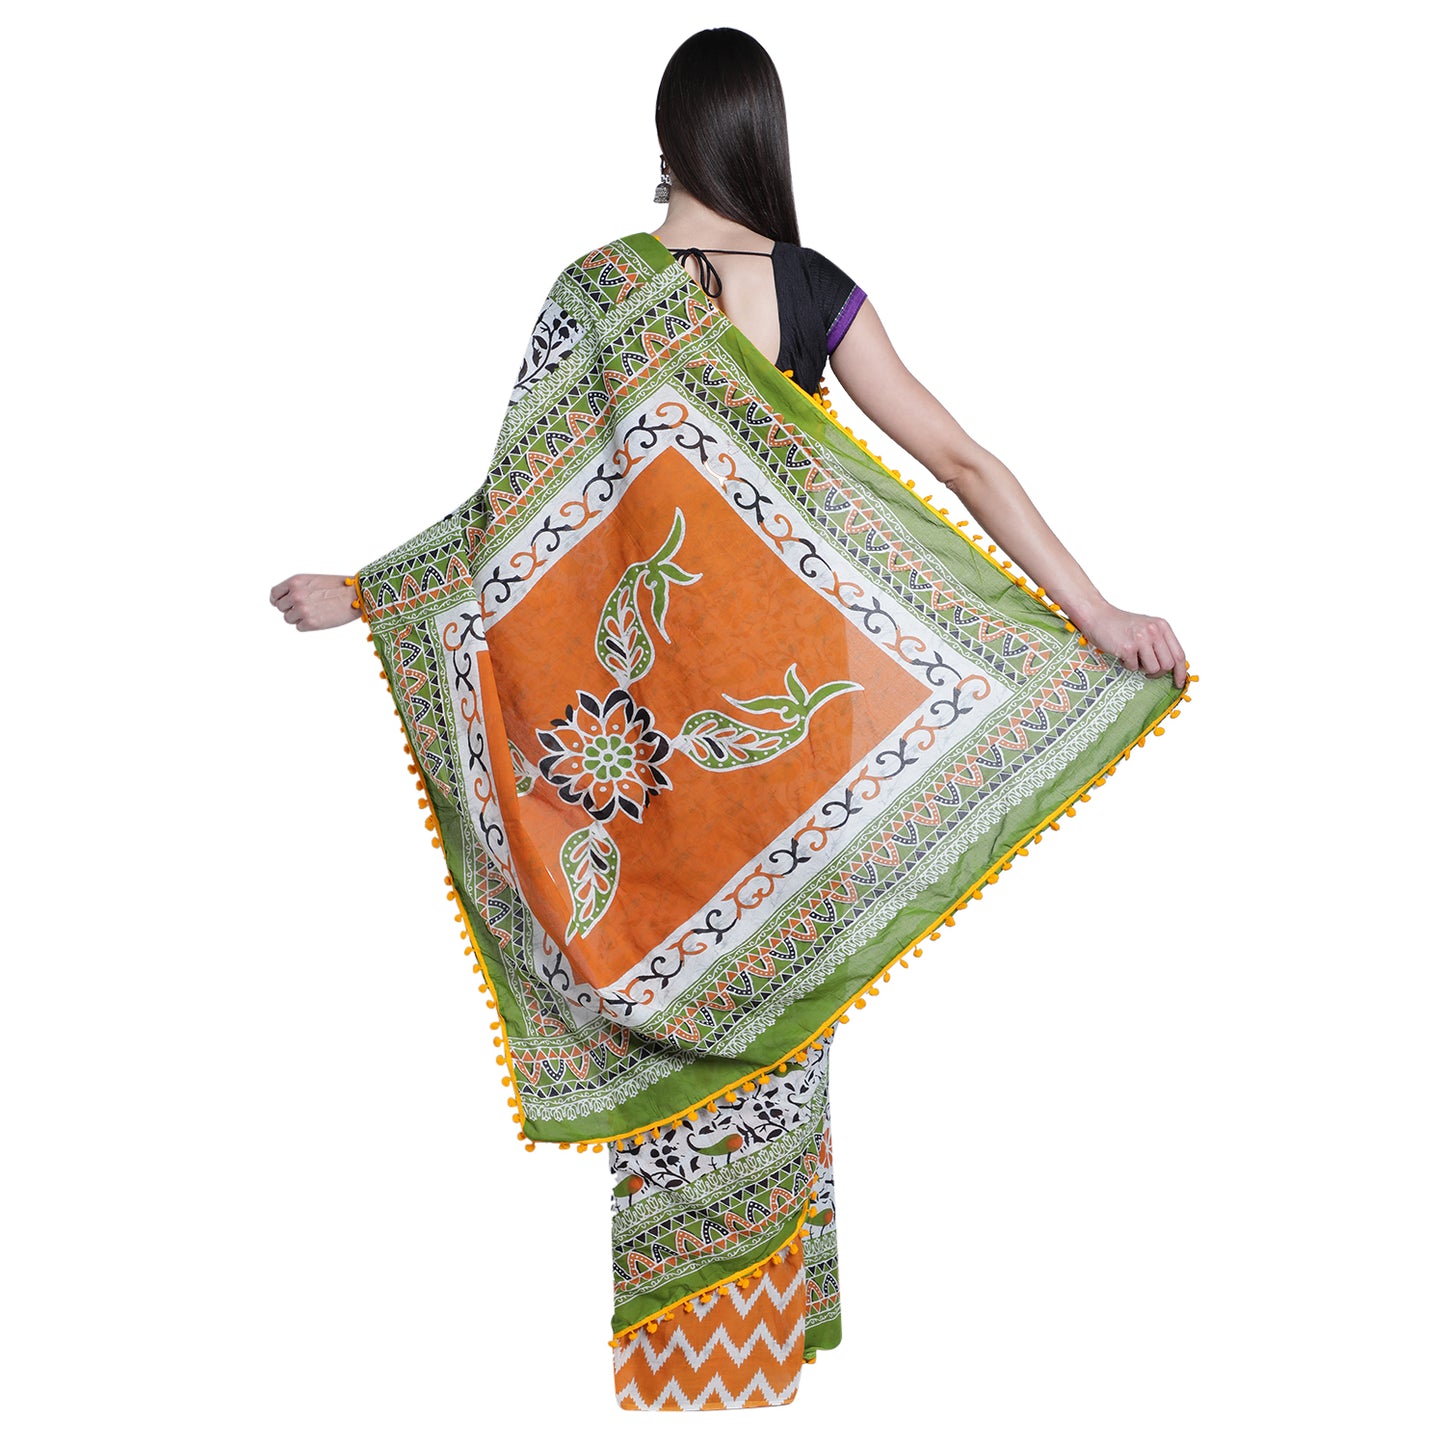 Jaipuri Splendor: Vibrant Cotton Saree with Exquisite Prints